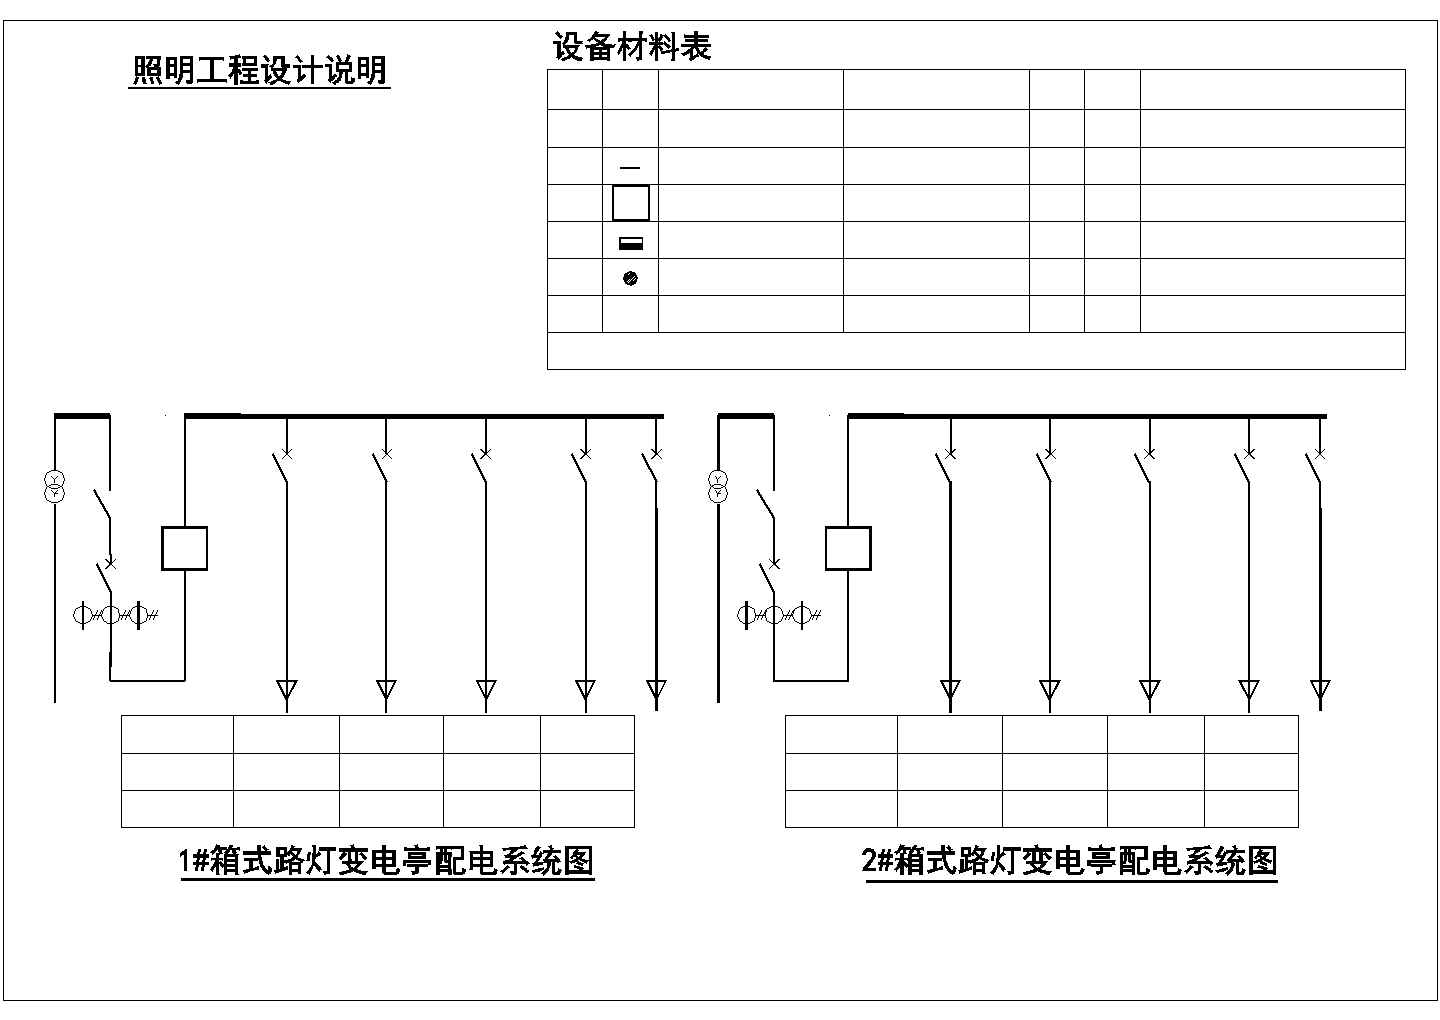 东京五道路照明平面图及其系统cad图纸，共一份资料